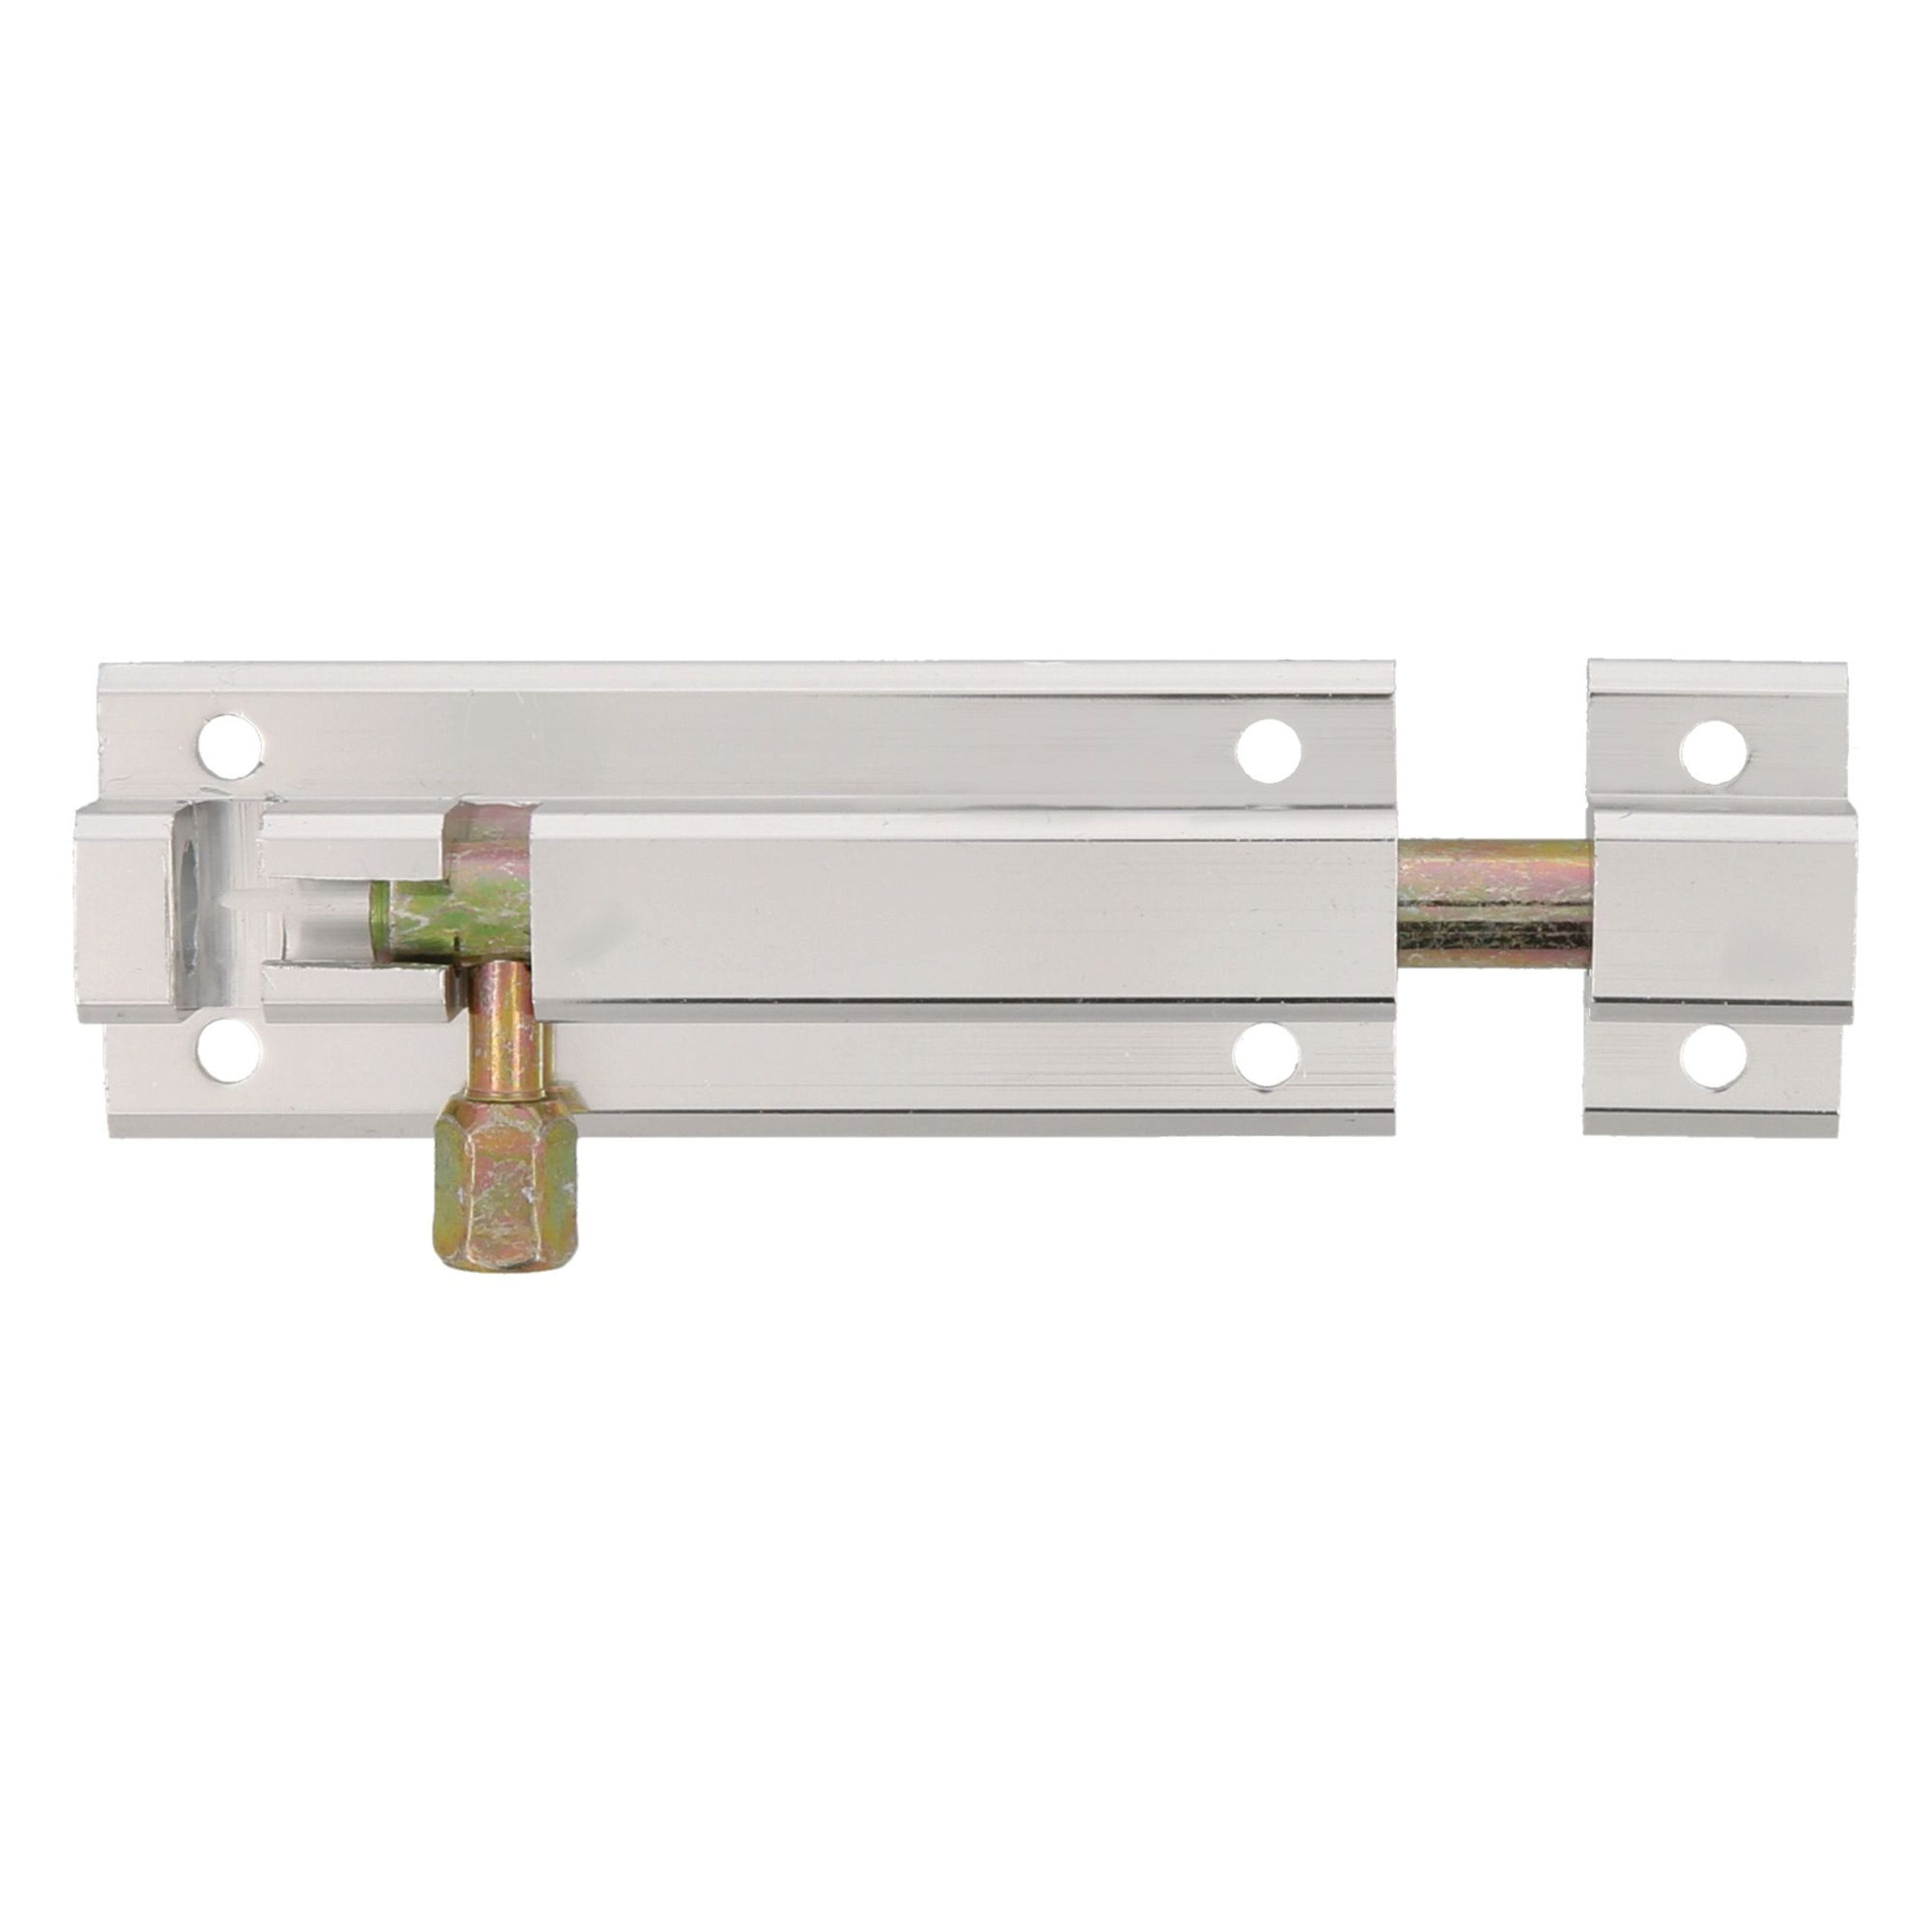 AMIG schuifslot-plaatgrendel aluminium 6 cm zilver deur schutting raam slot